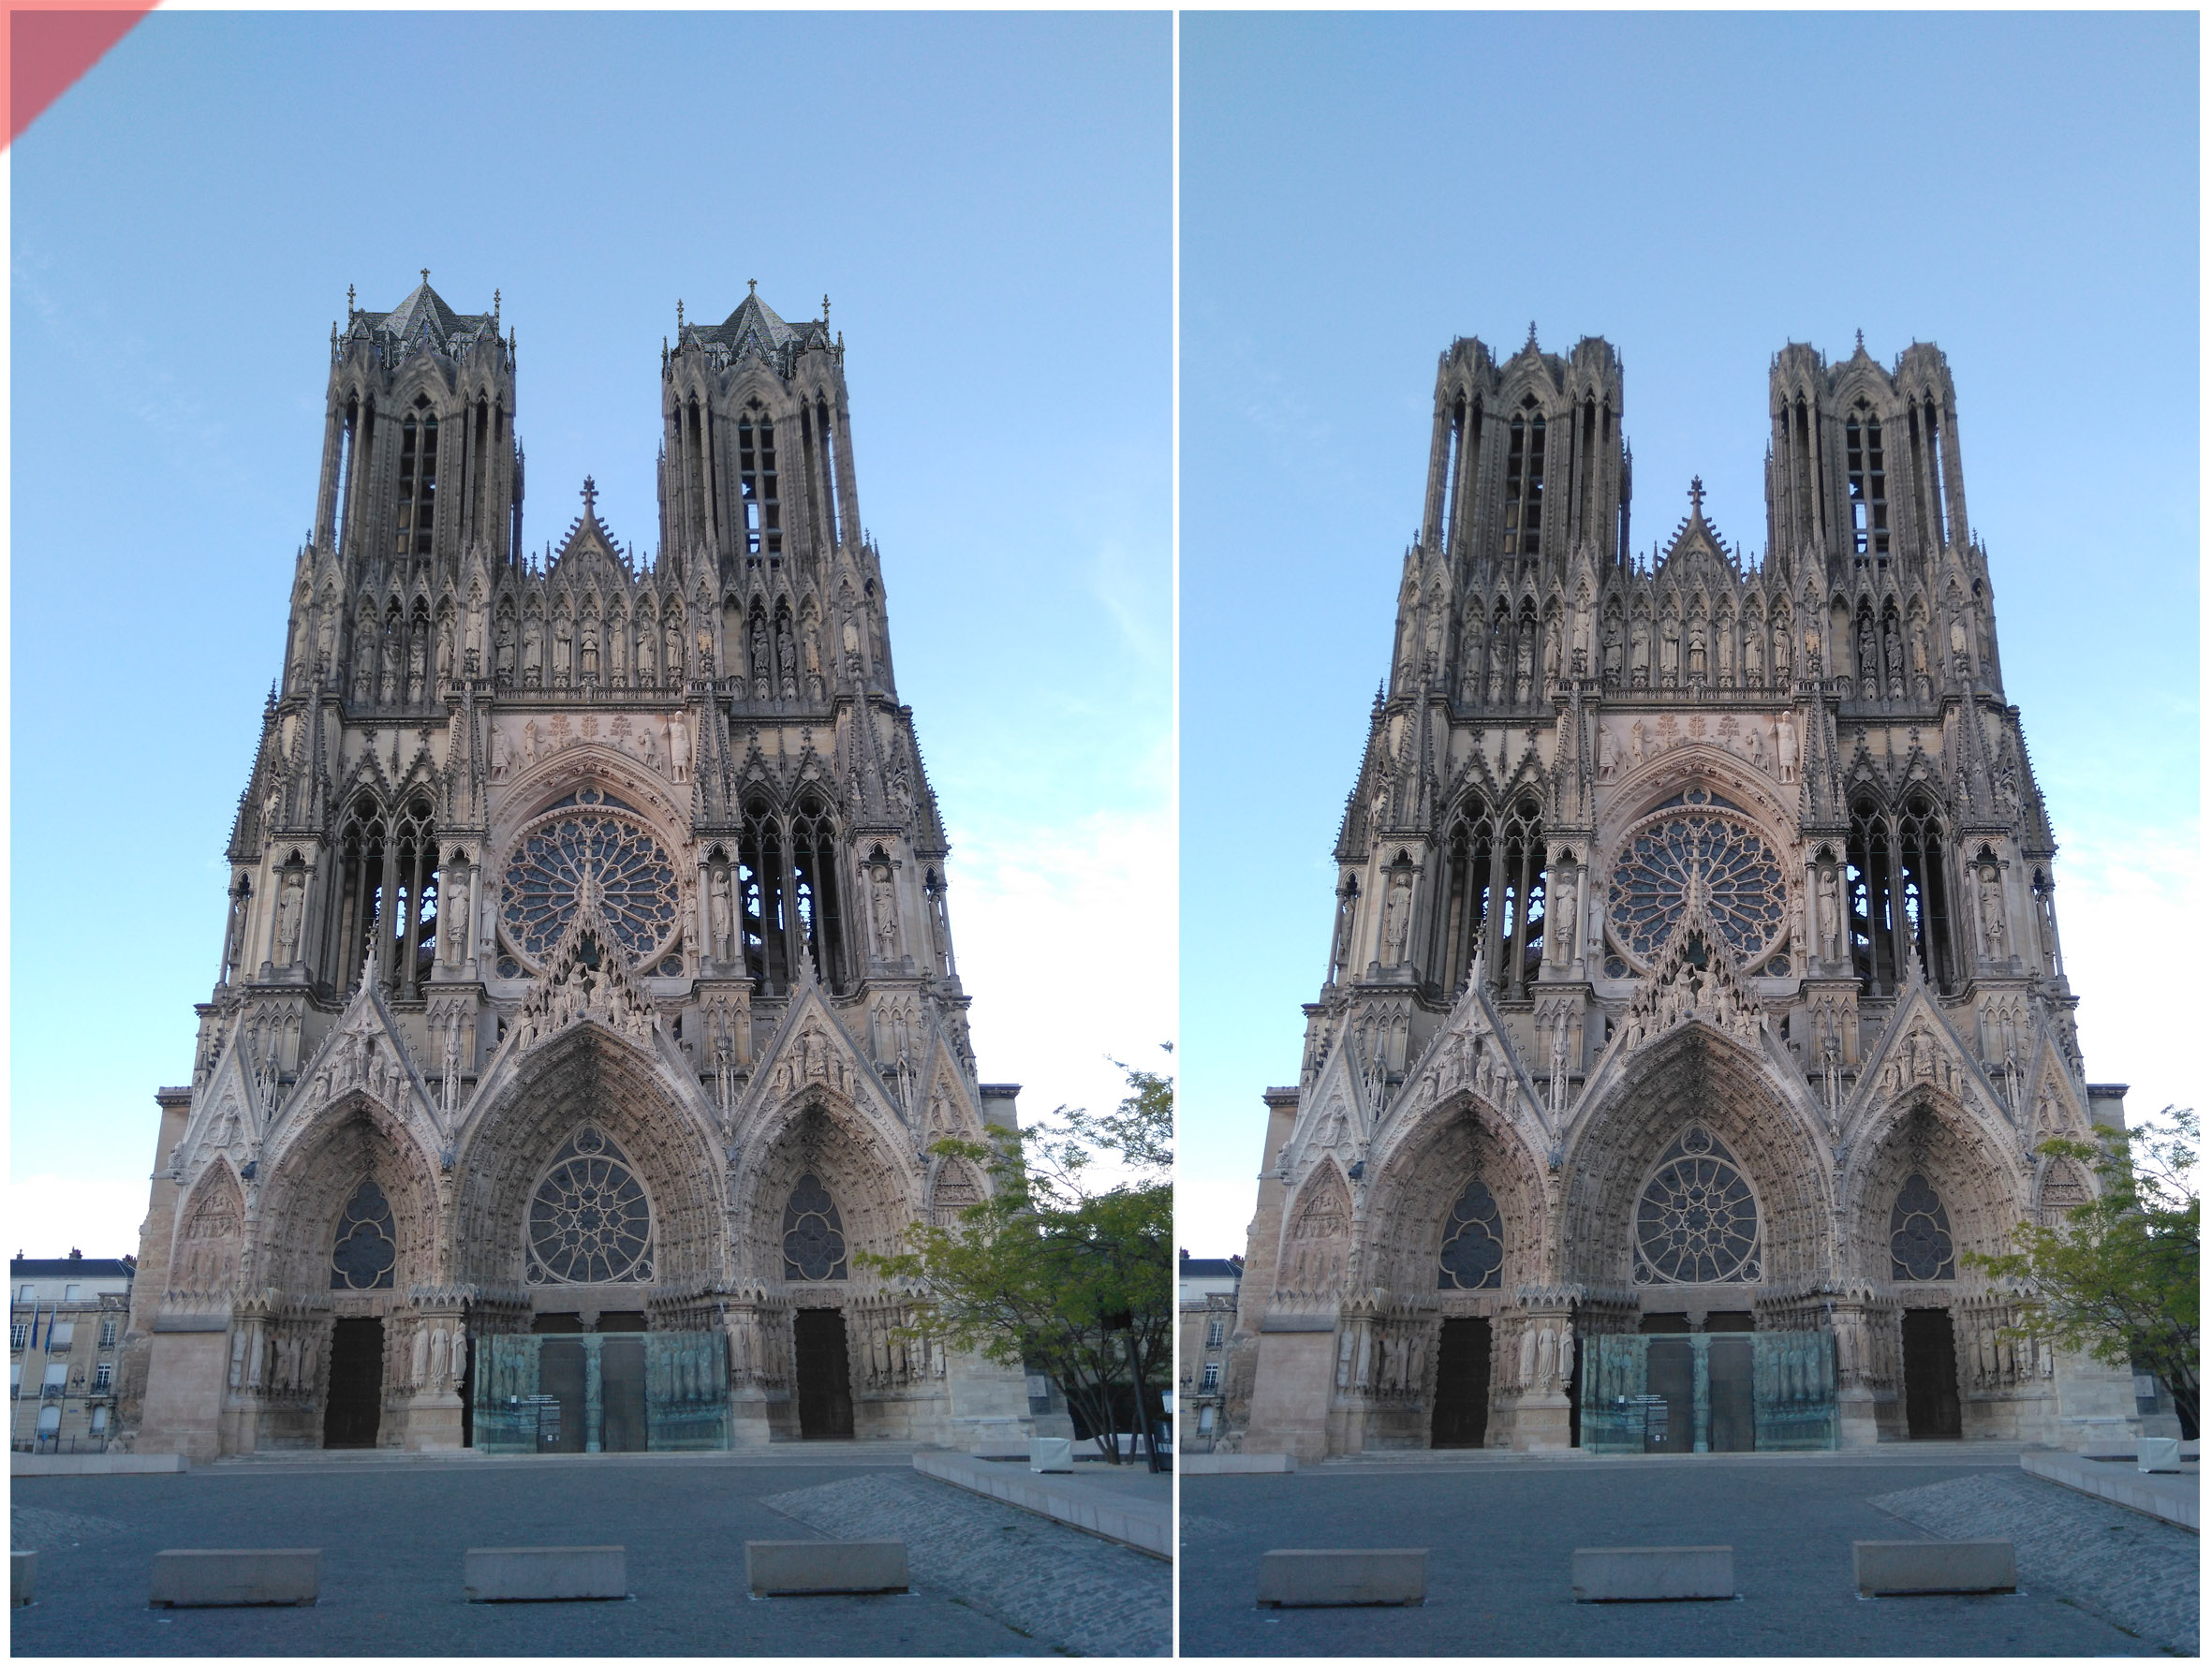 Reims-Cathédrale-Reims-tours-2-deux-prévu-toit-de-pierre-façade-ouest-Reims-cathedrale-2-two-towers-kathedrale-pitched-roof-stone-then-and-now